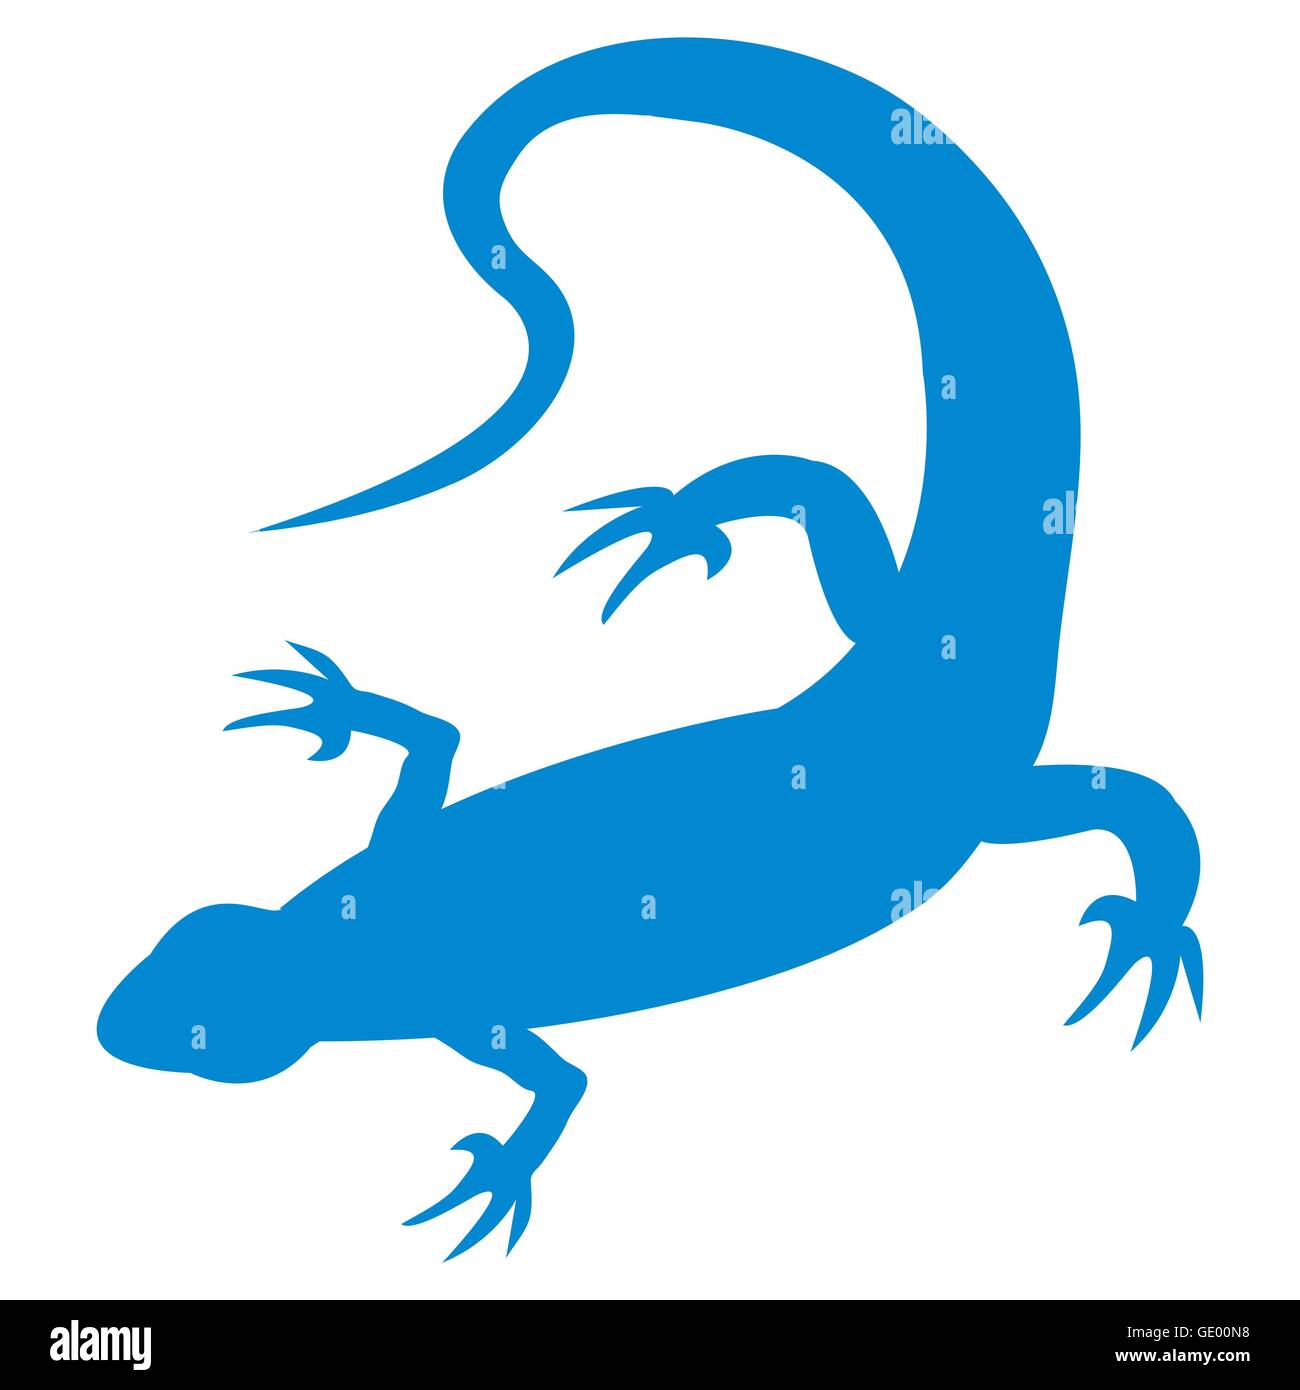 Bức ảnh liên quan đến vẽ salamander mang đến cho bạn một thế giới đầy tính sáng tạo và màu sắc đa dạng. Bạn sẽ được luyện tập kỹ năng sáng tạo và cải thiện khả năng vẽ của mình thông qua bức tranh này.